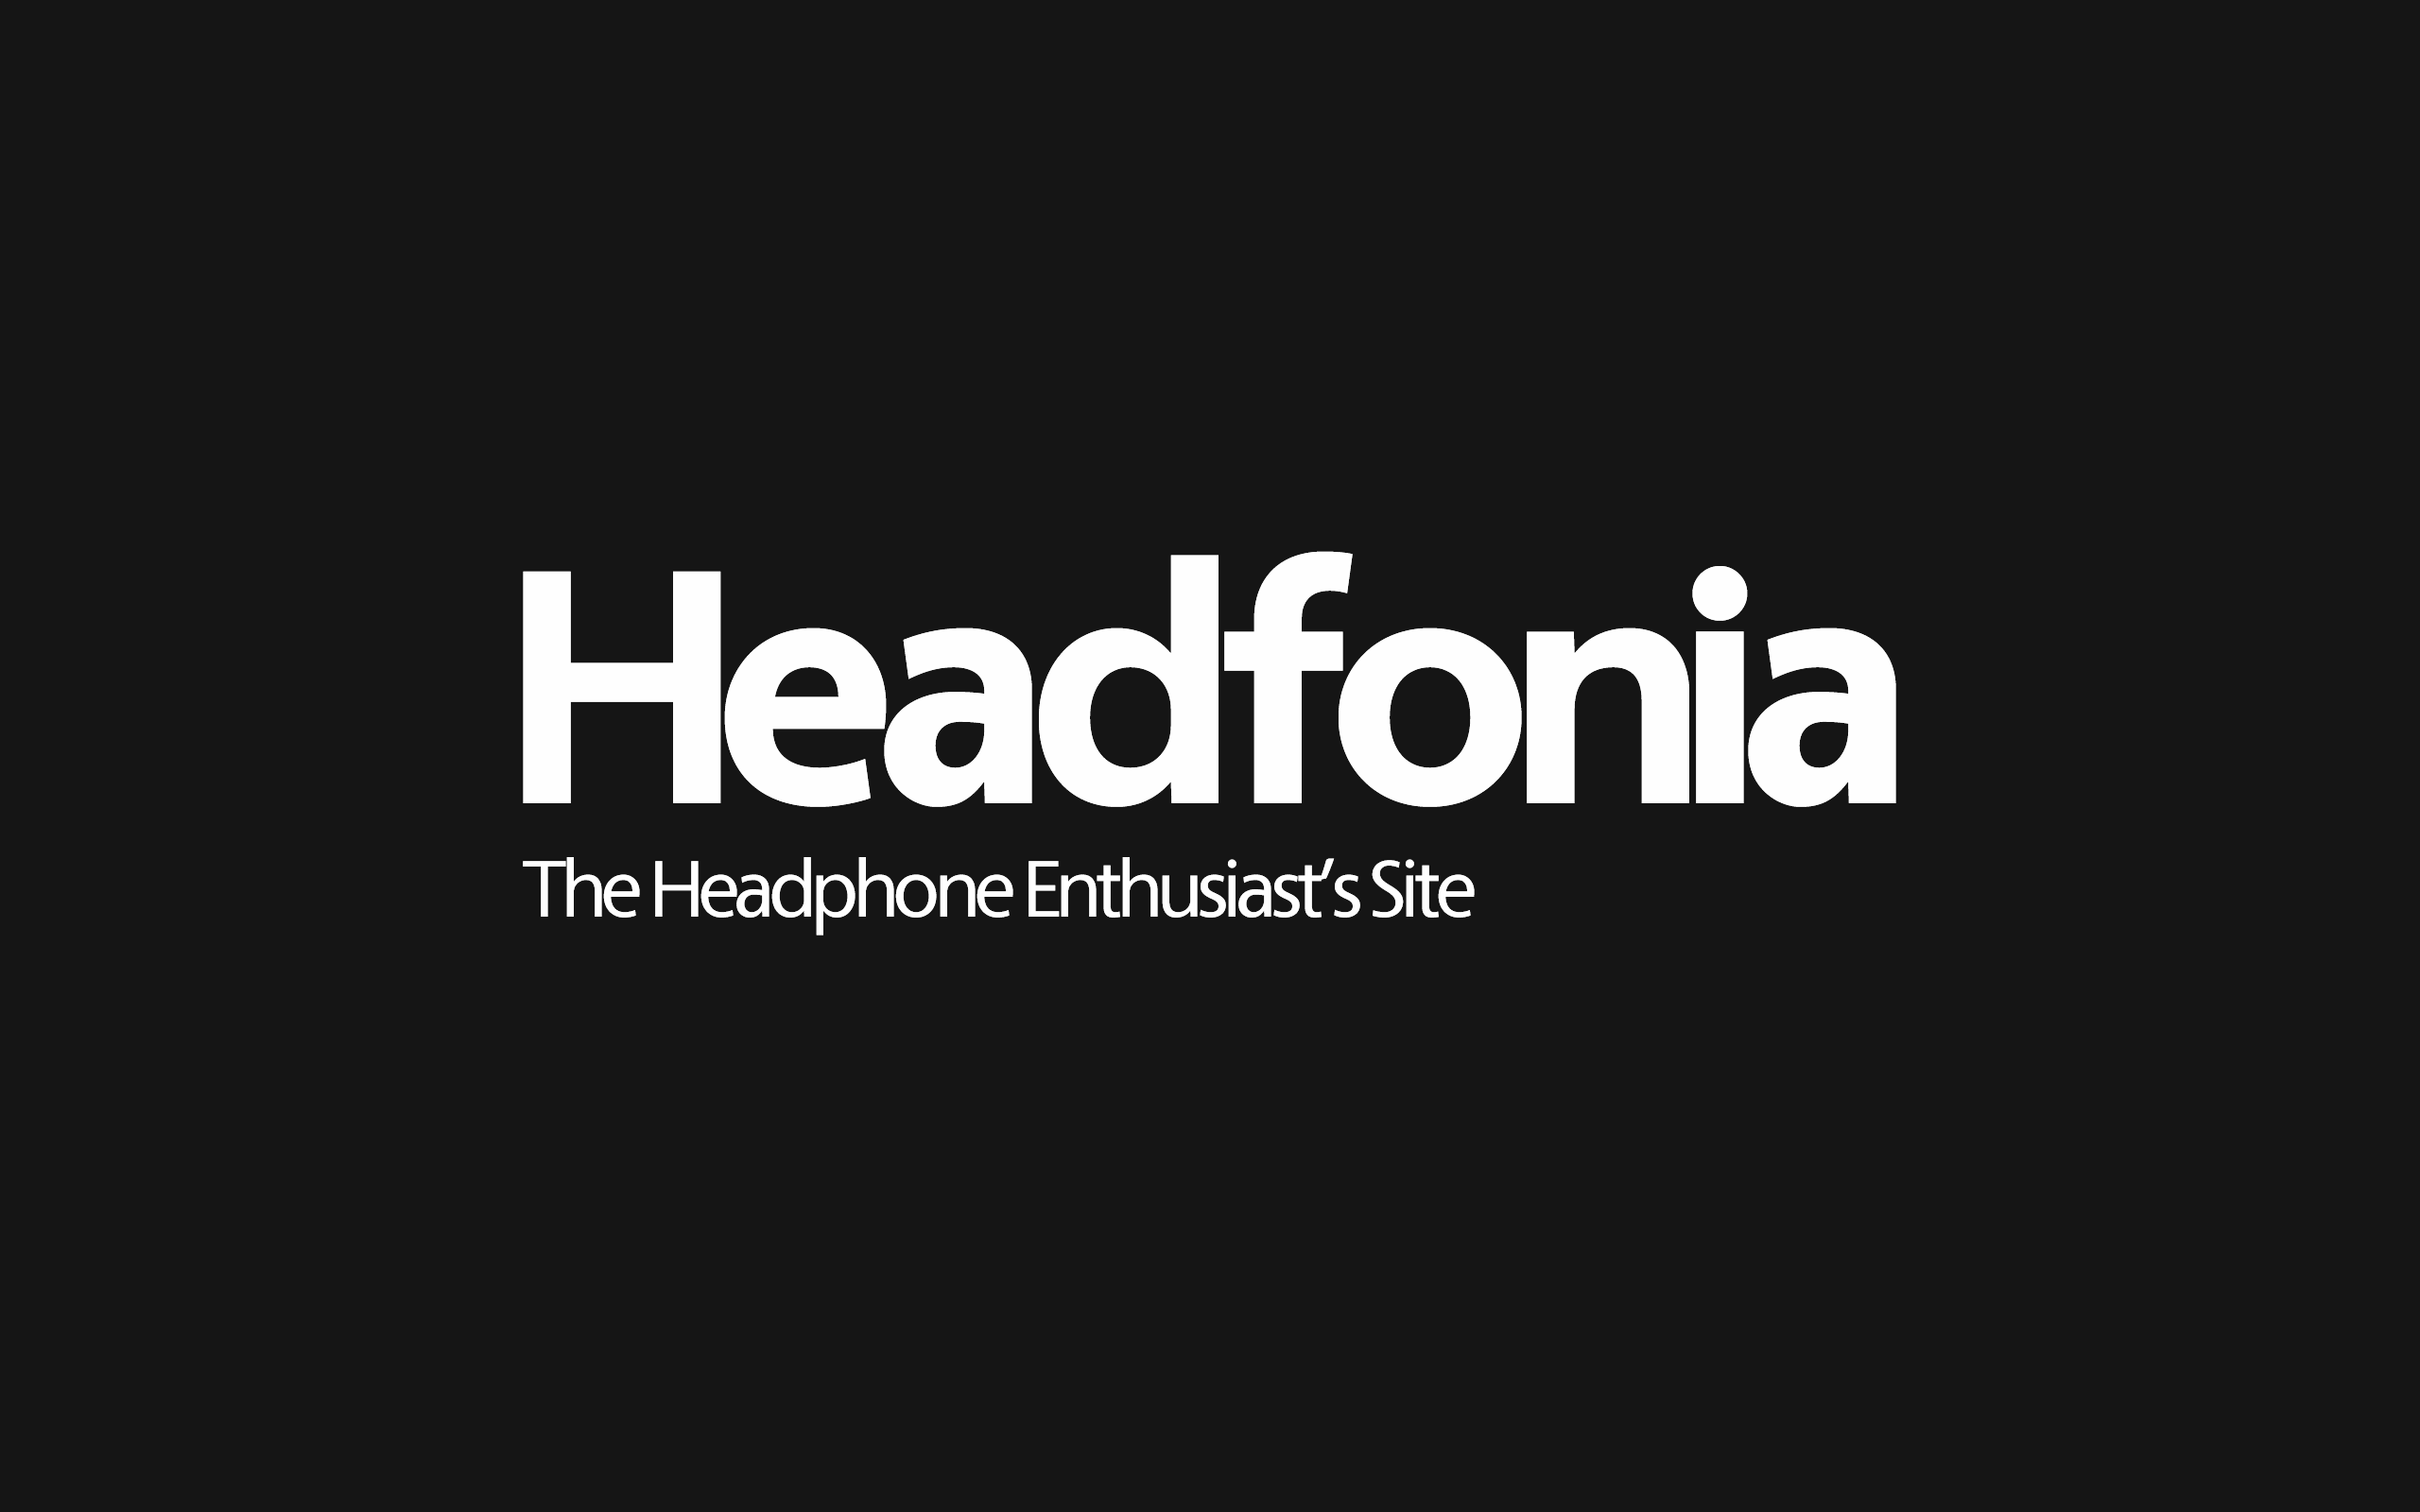 (c) Headfonia.com